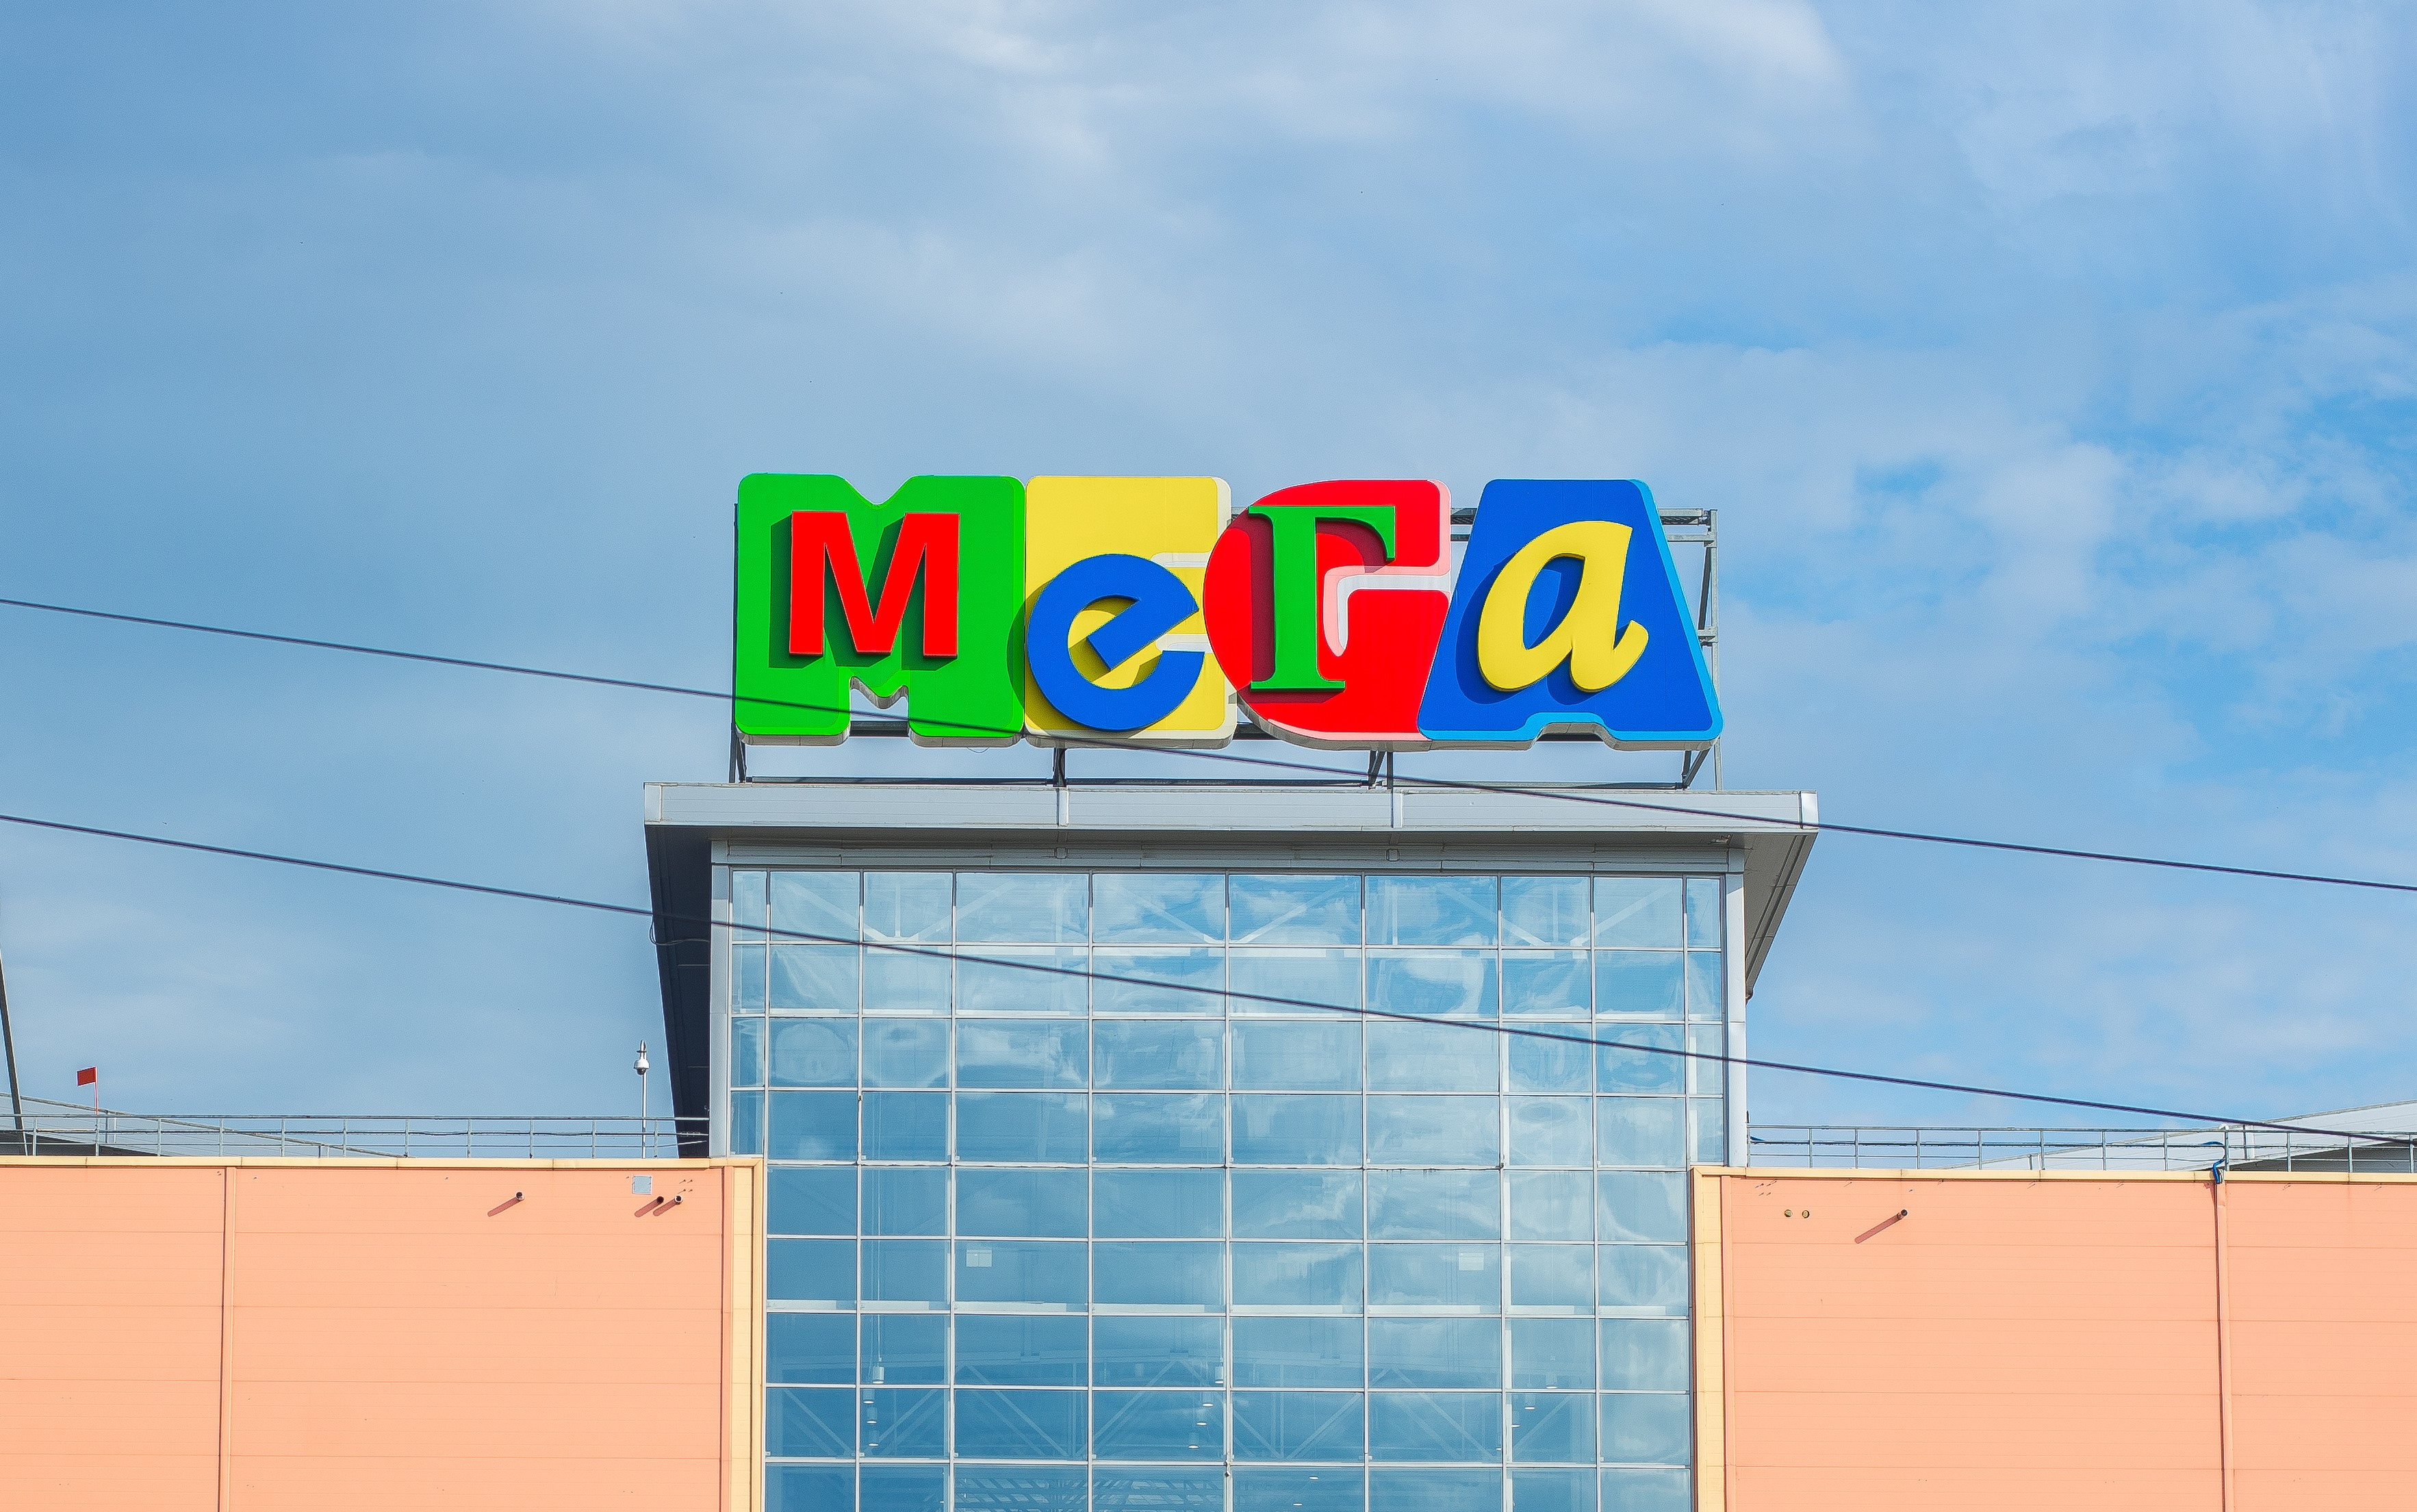 Mega onion войти попасть на мегу браузер тор на русском официальный сайт mega2web